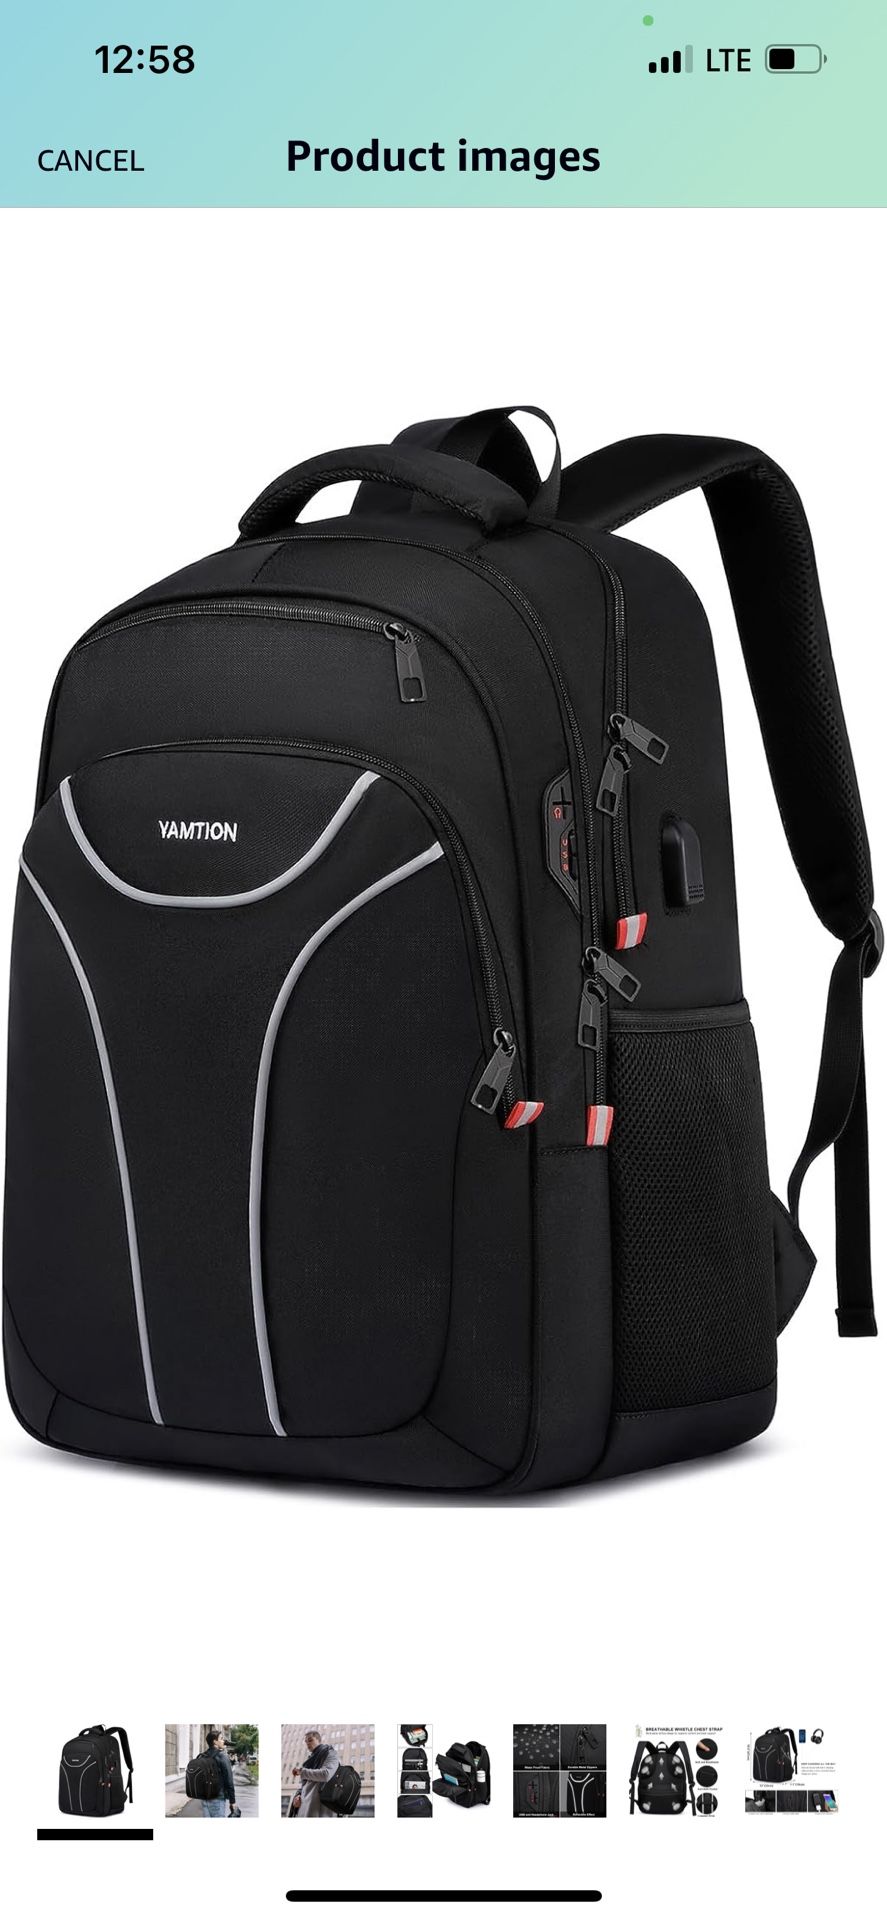 Yamtion Backpack 